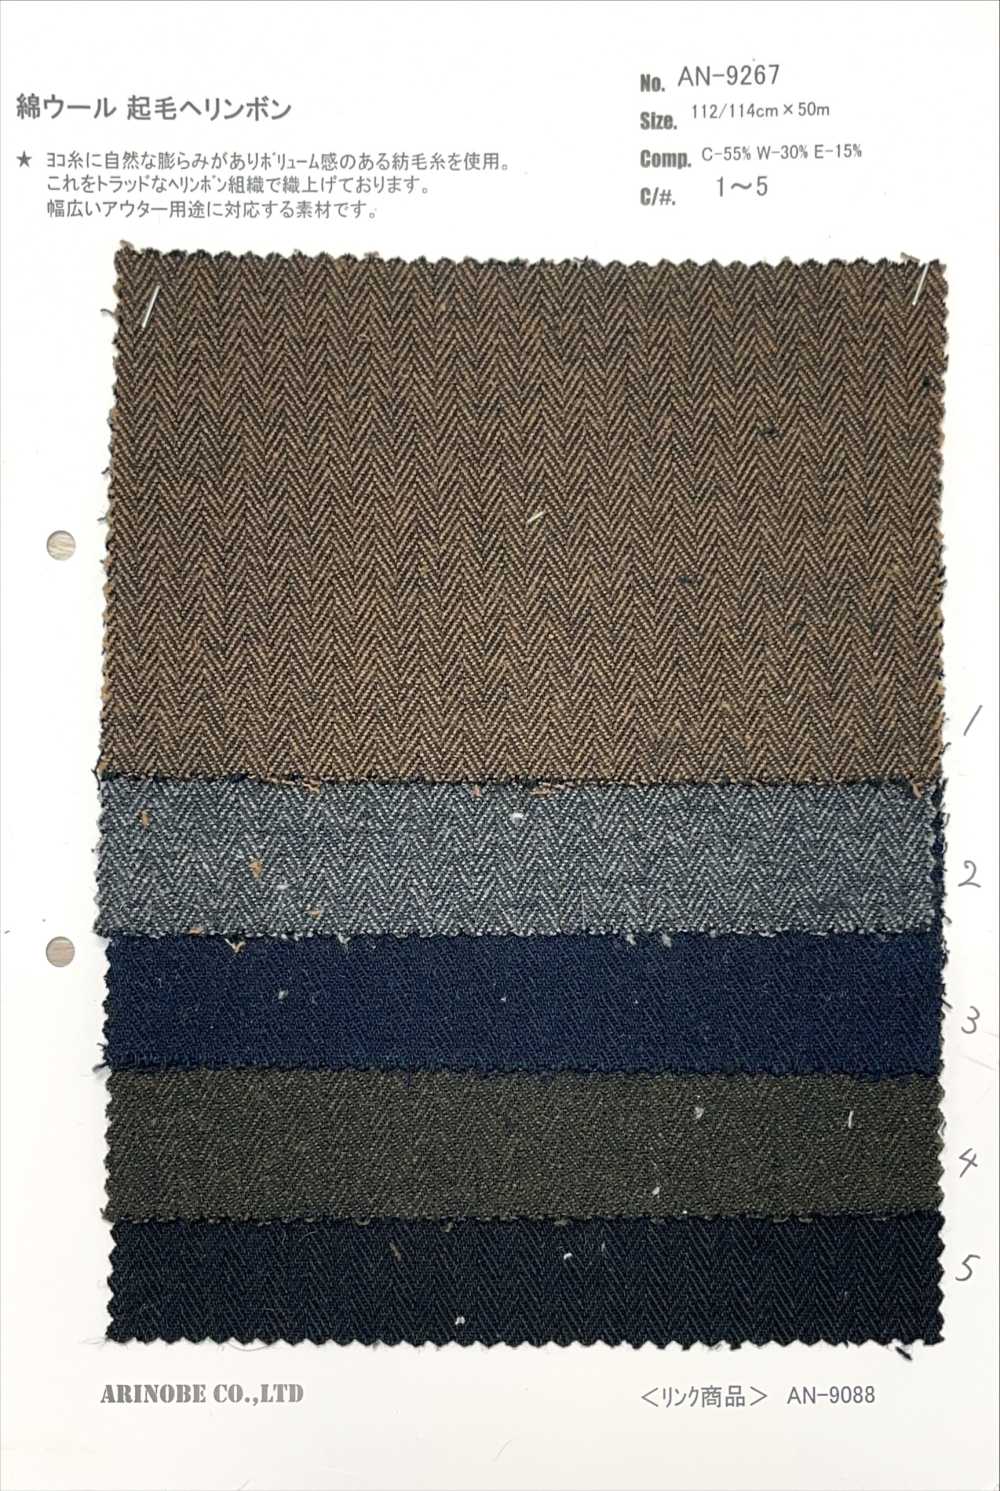 AN-9267 Espinha De Peixe Felpuda De Algodão[Têxtil / Tecido] ARINOBE CO., LTD.